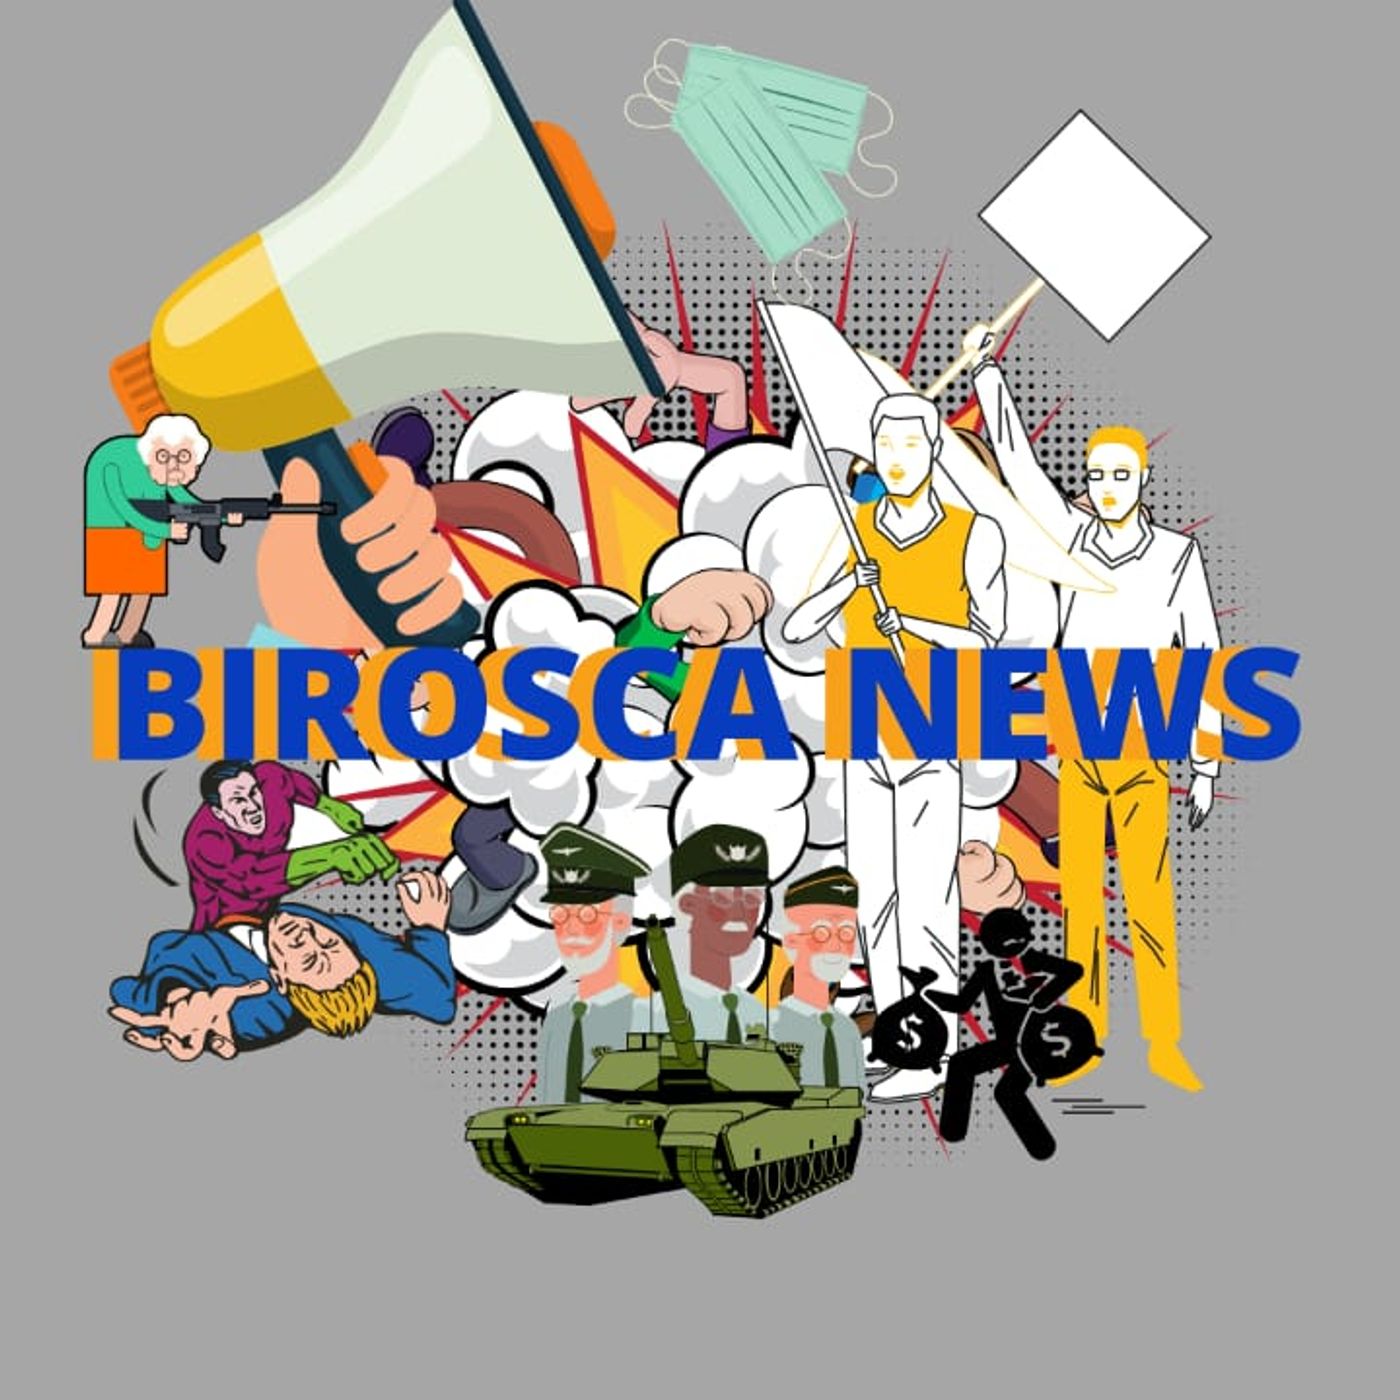 #BiroscaNews off: Concurso Público: é Inconstitucional proibir de participar pessoa com tatuagem